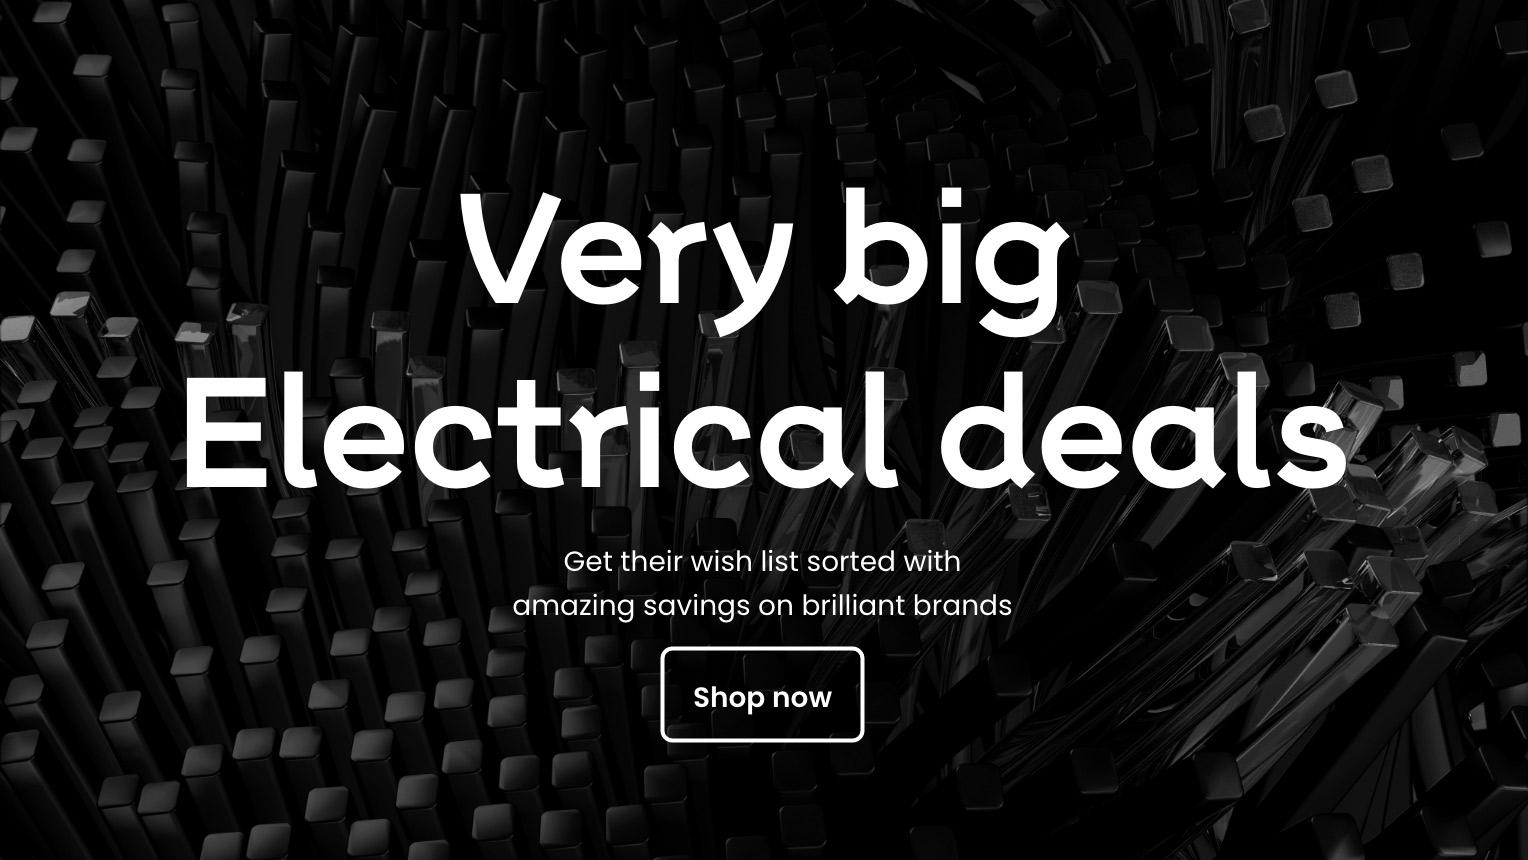 Big electrical deals